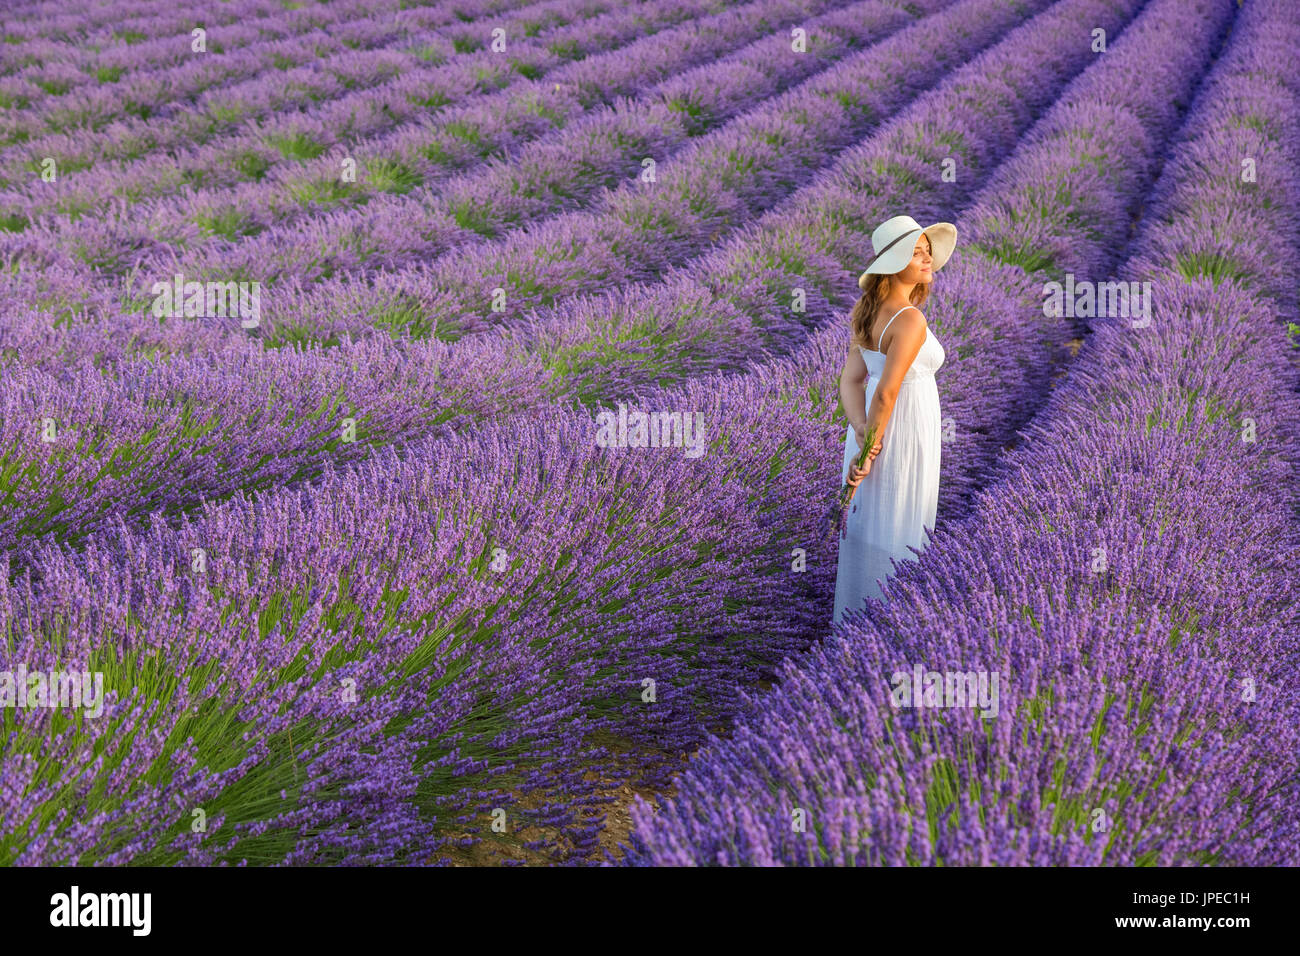 Woman with hat in a lavender field. Plateau de Valensole, Alpes-de-Haute-Provence, Provence-Alpes-Cote d'Azur, France, Europe. Stock Photo